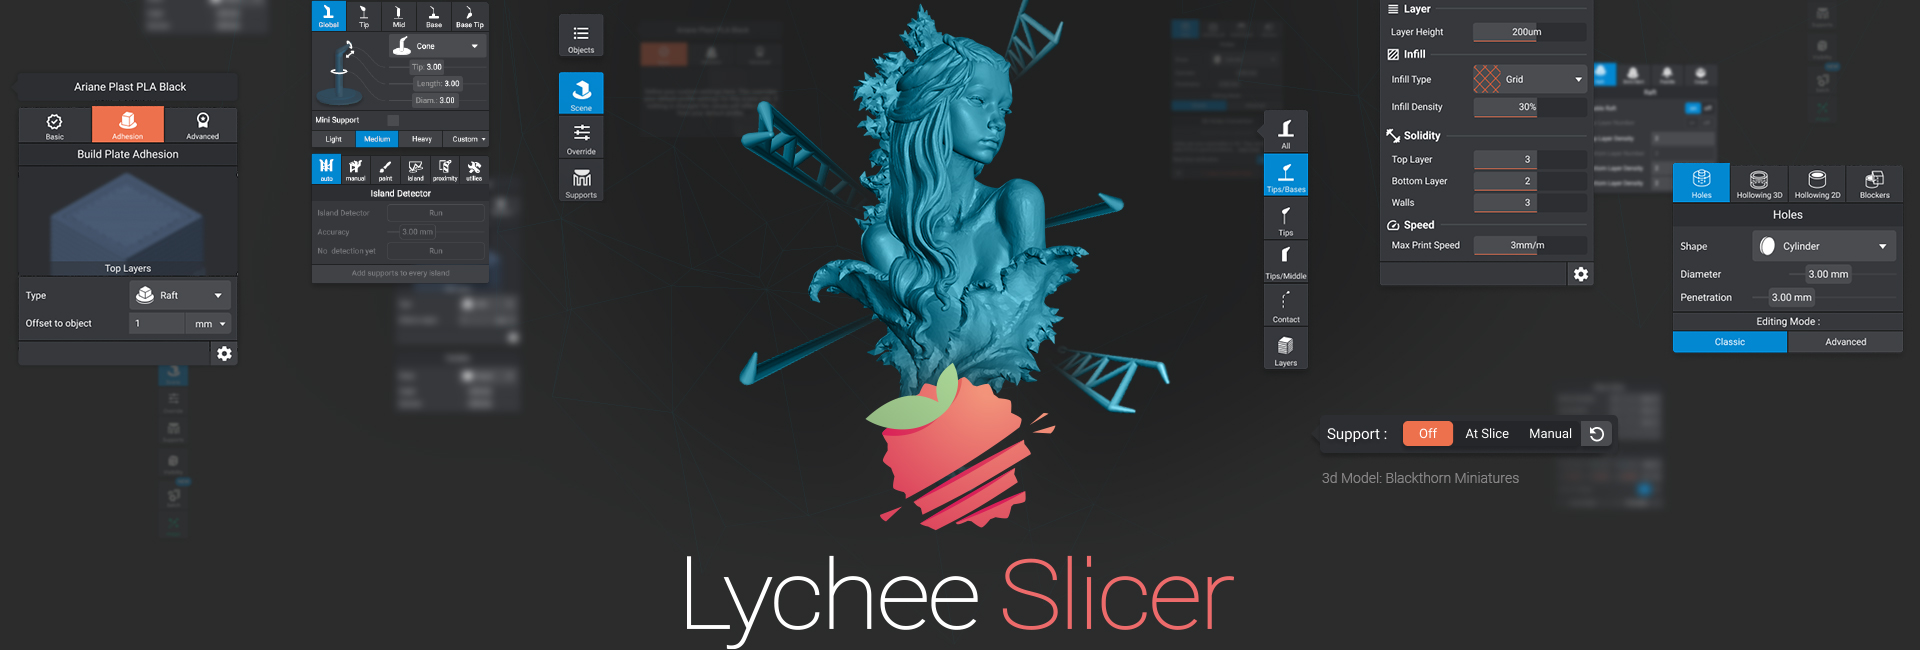 3D Slicer-Lychee Slicer